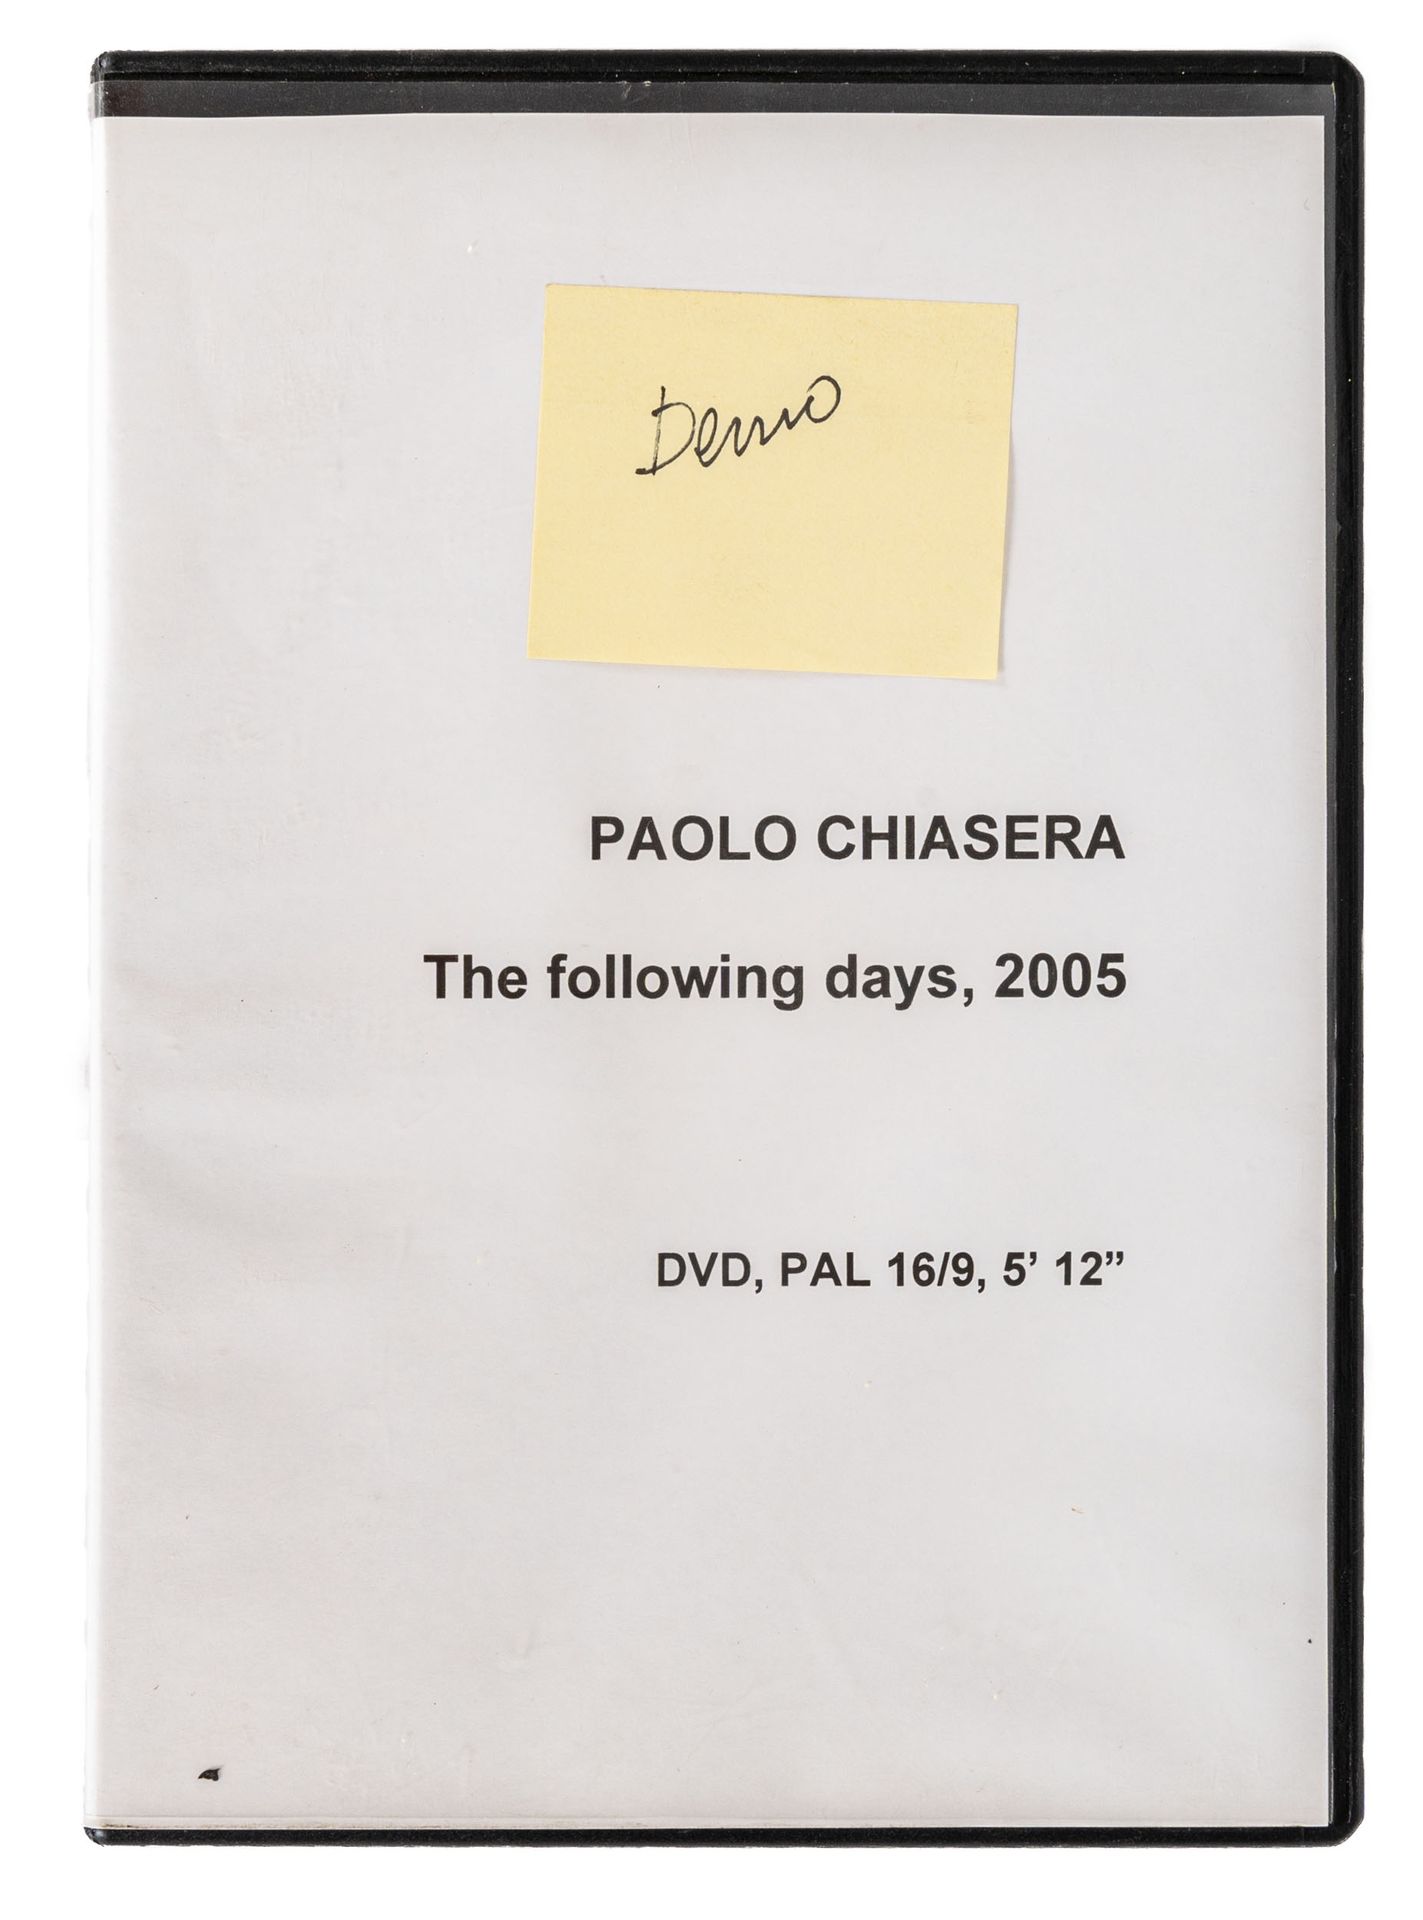 PAOLO CHIASERA PAUL CHIASERA

(1978)

Unbenannt

Video-DVD und VHS mit einer Dok&hellip;